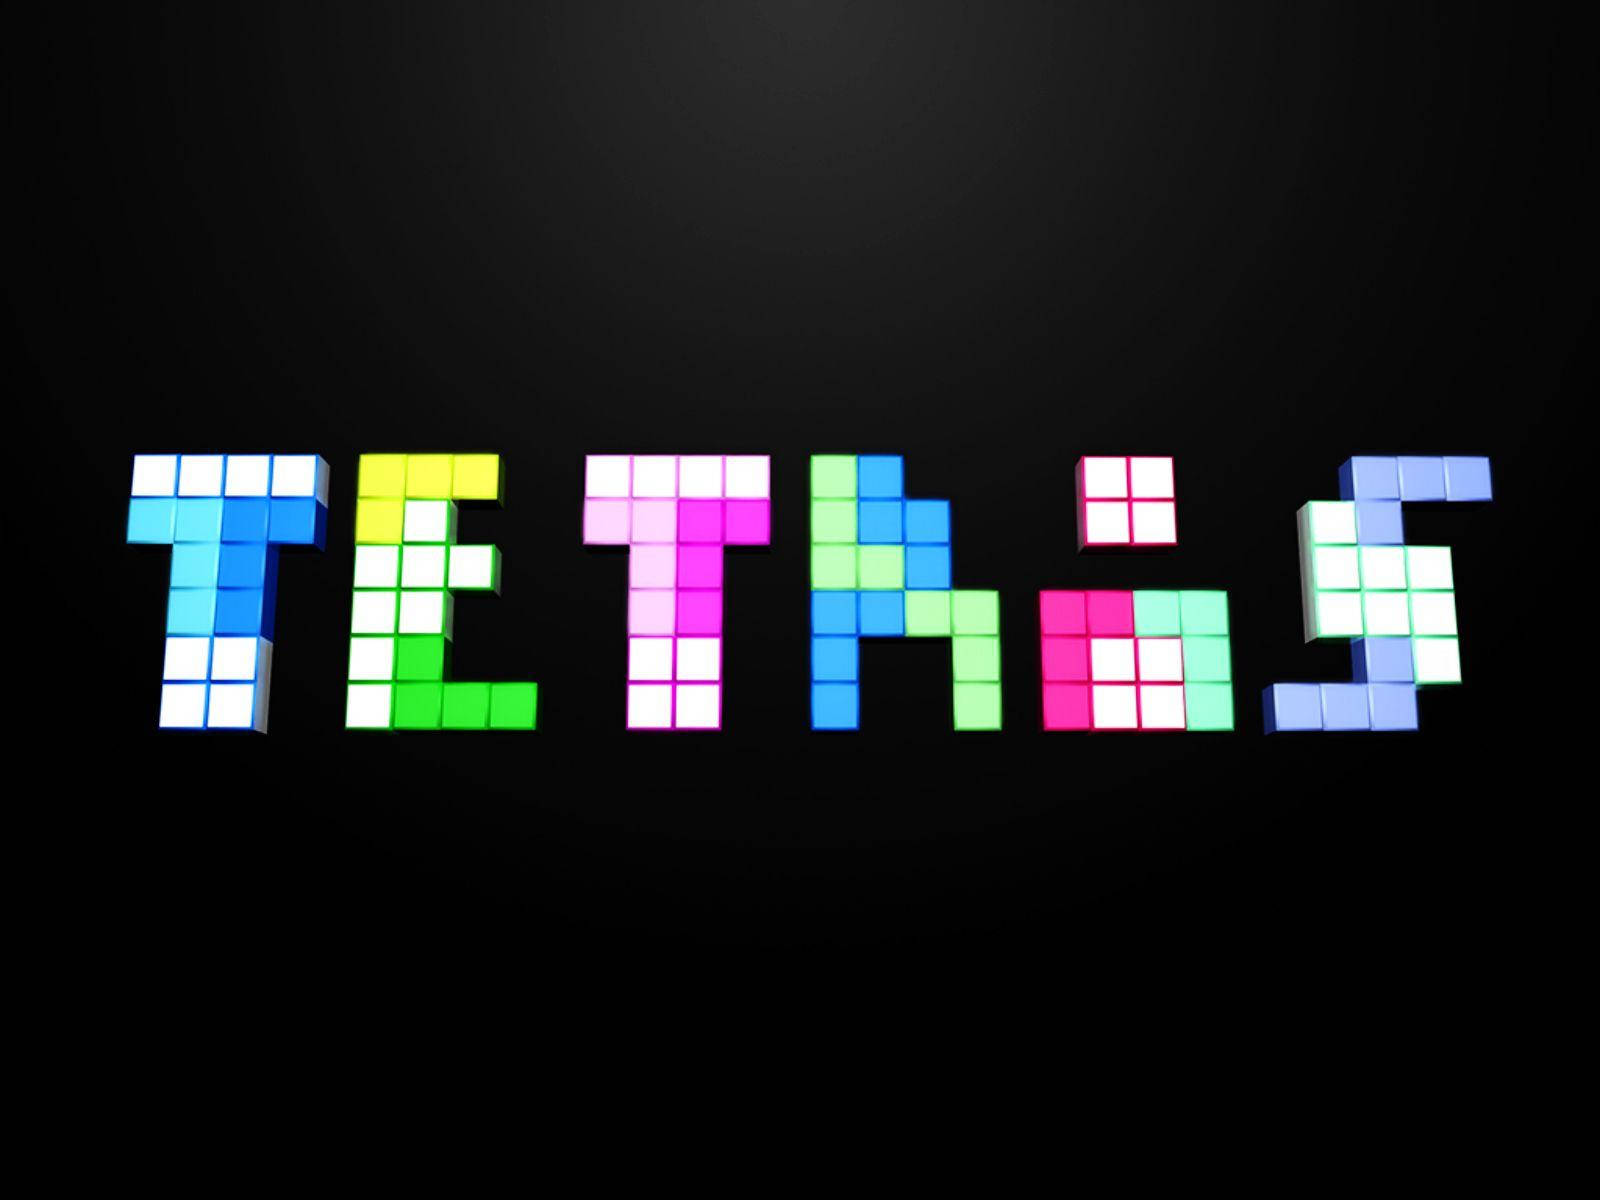 Títulode Tetris Hecho De Fichas De Tetris. Fondo de pantalla